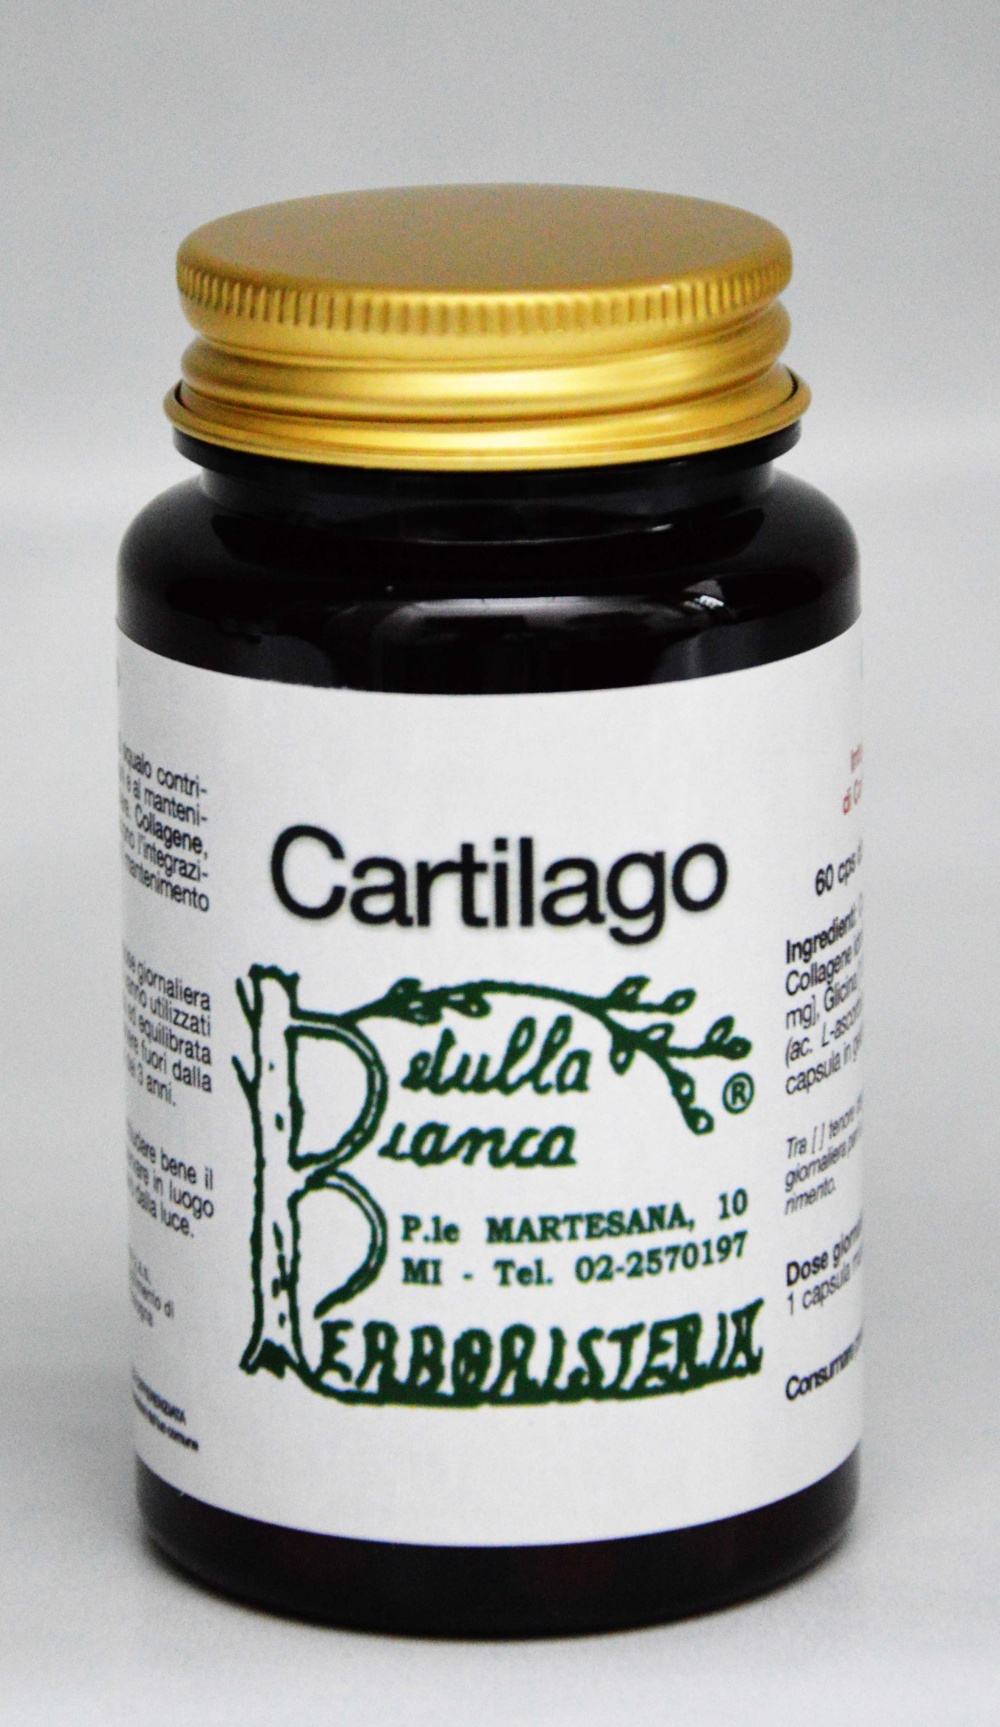 Cartilago capsule